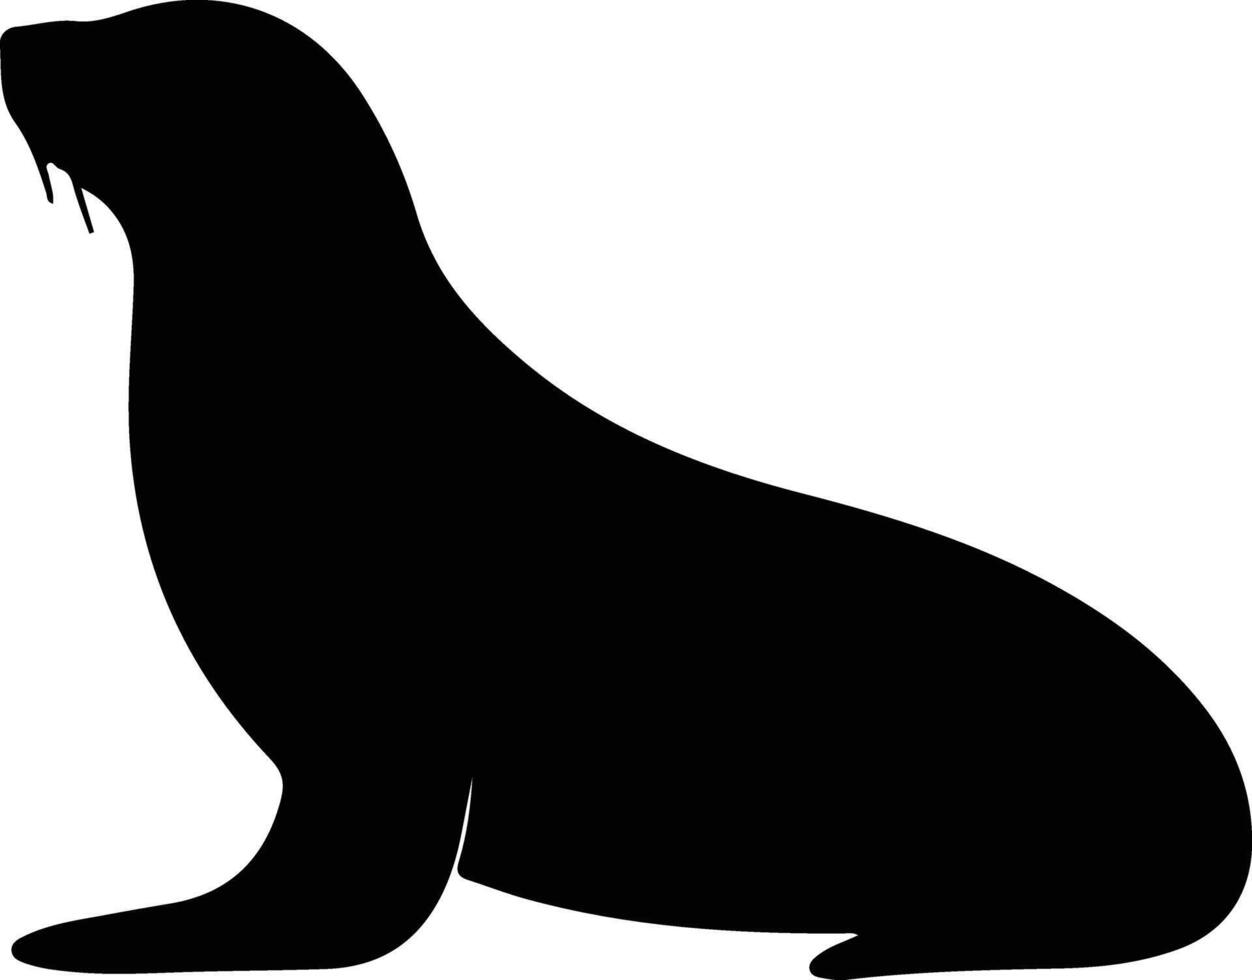 California sea lion black silhouette vector